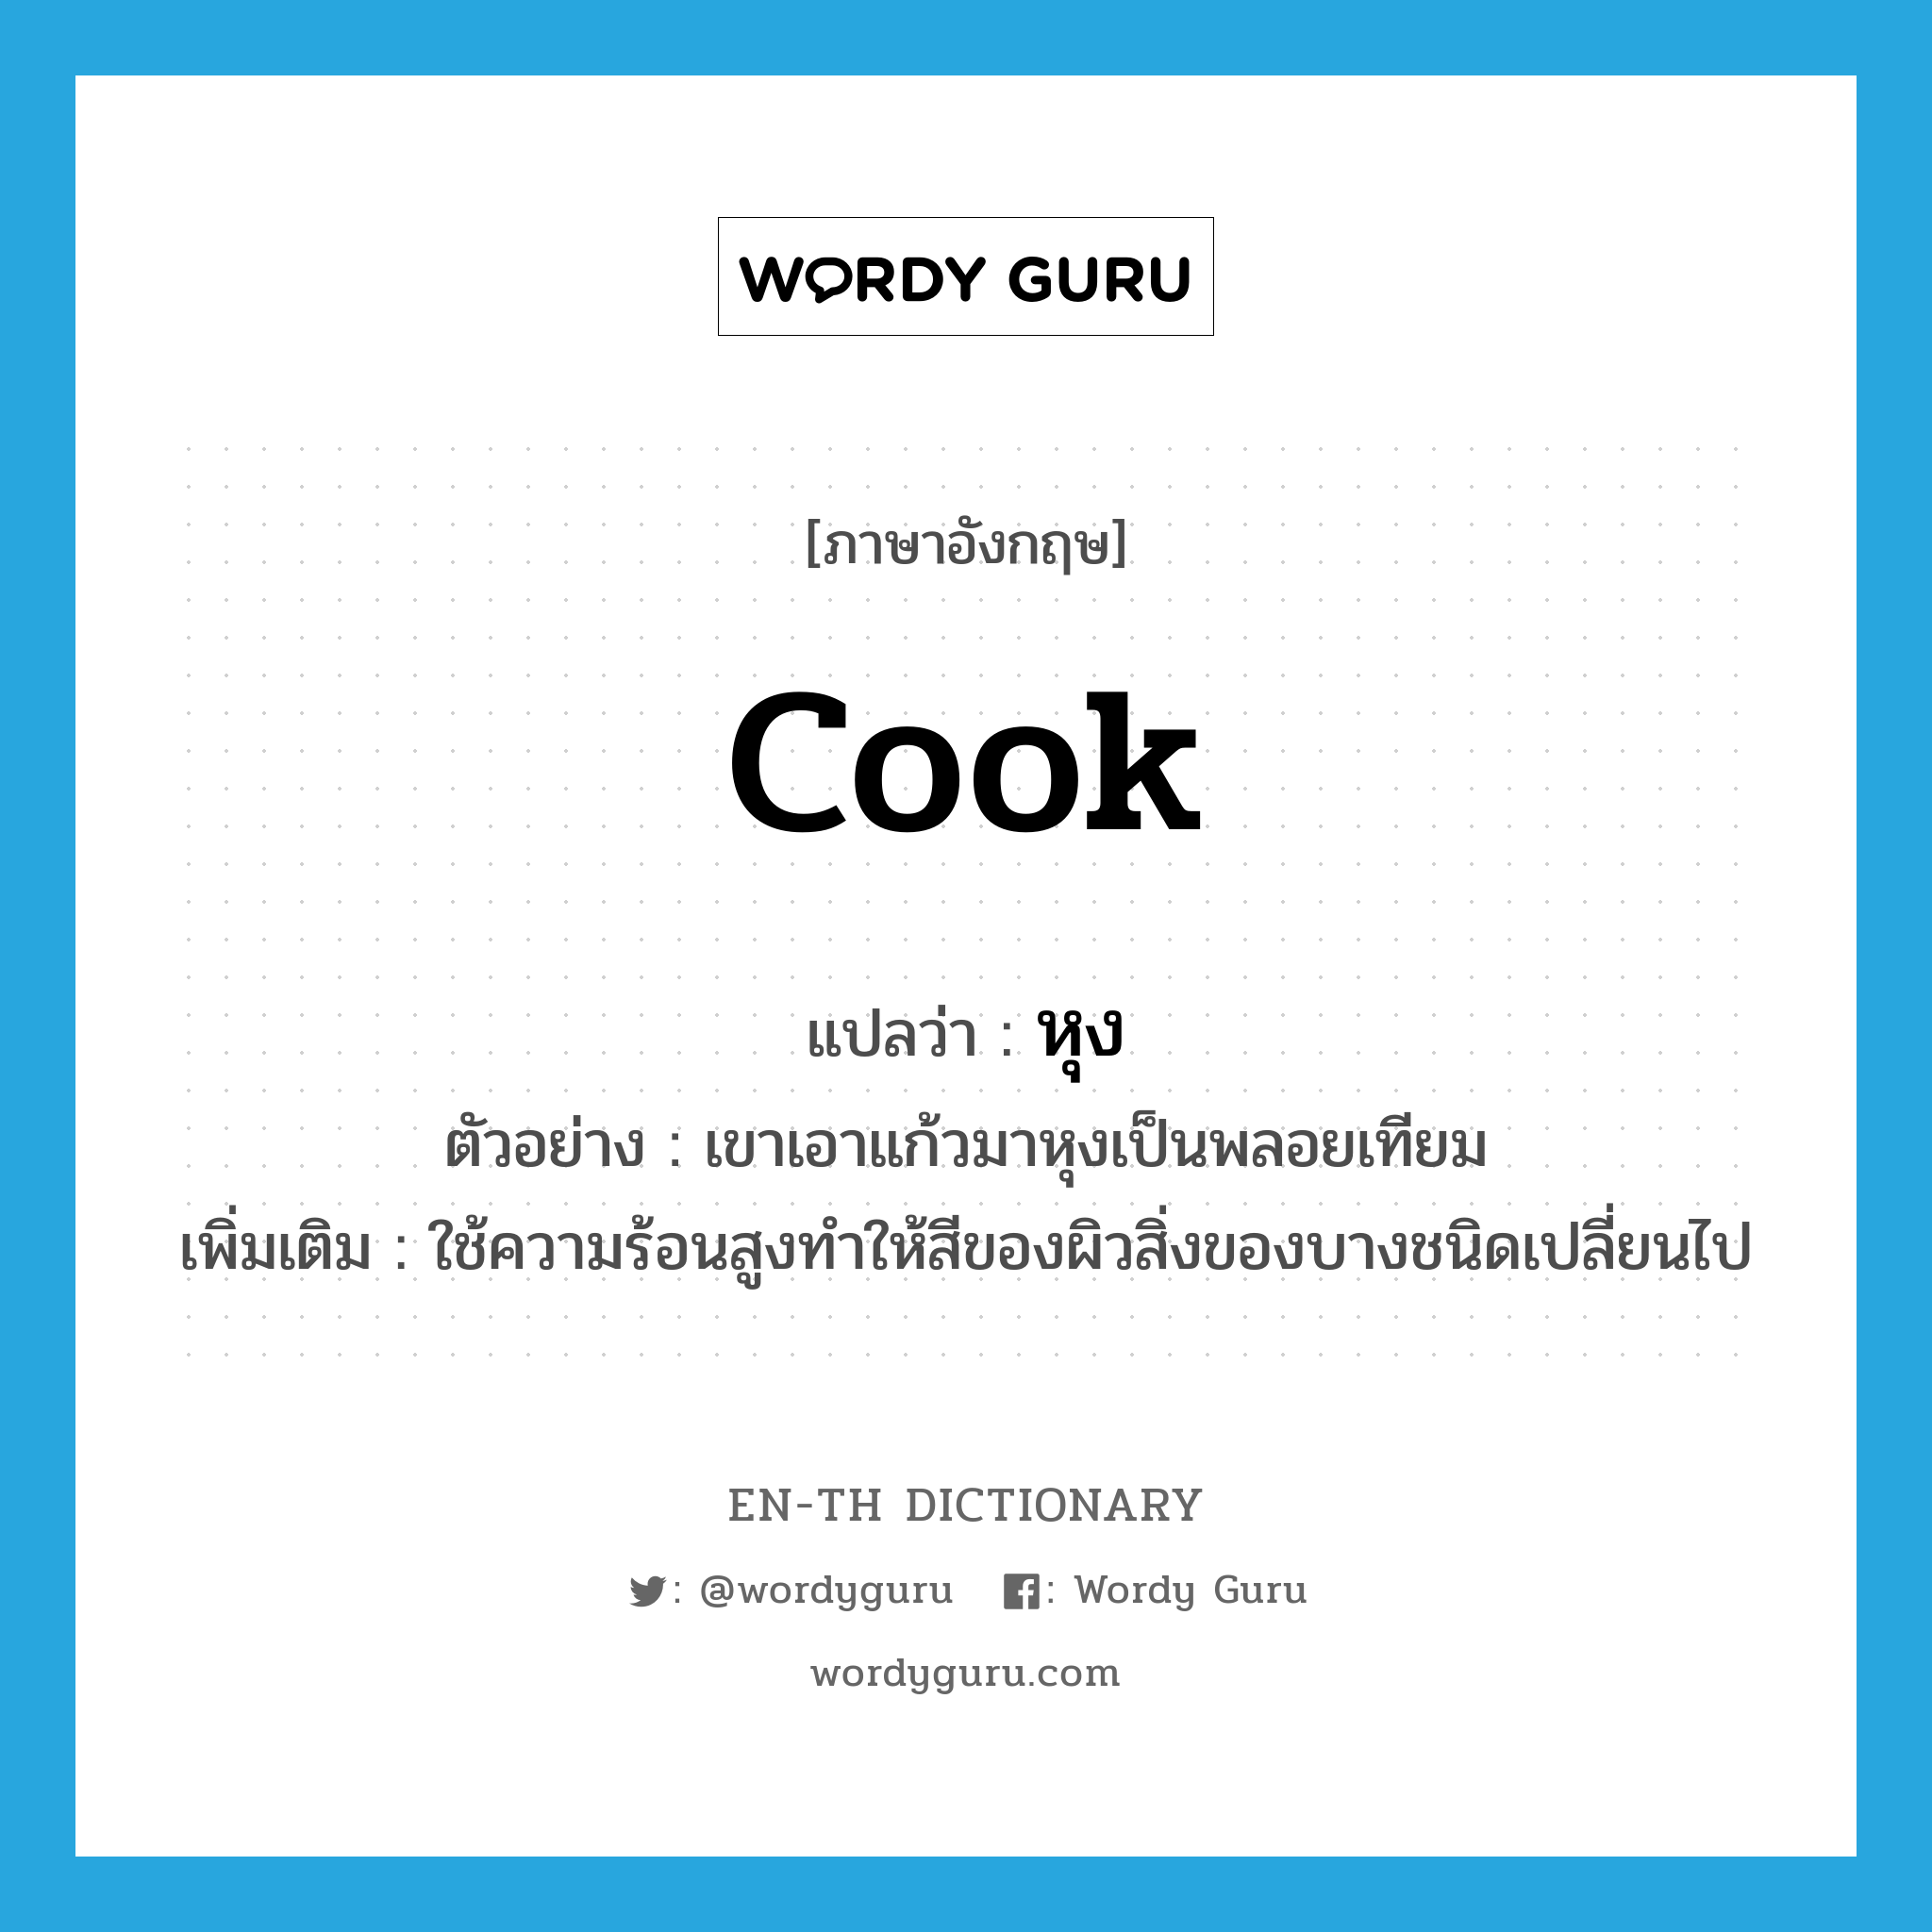 cook แปลว่า?, คำศัพท์ภาษาอังกฤษ cook แปลว่า หุง ประเภท V ตัวอย่าง เขาเอาแก้วมาหุงเป็นพลอยเทียม เพิ่มเติม ใช้ความร้อนสูงทำให้สีของผิวสิ่งของบางชนิดเปลี่ยนไป หมวด V